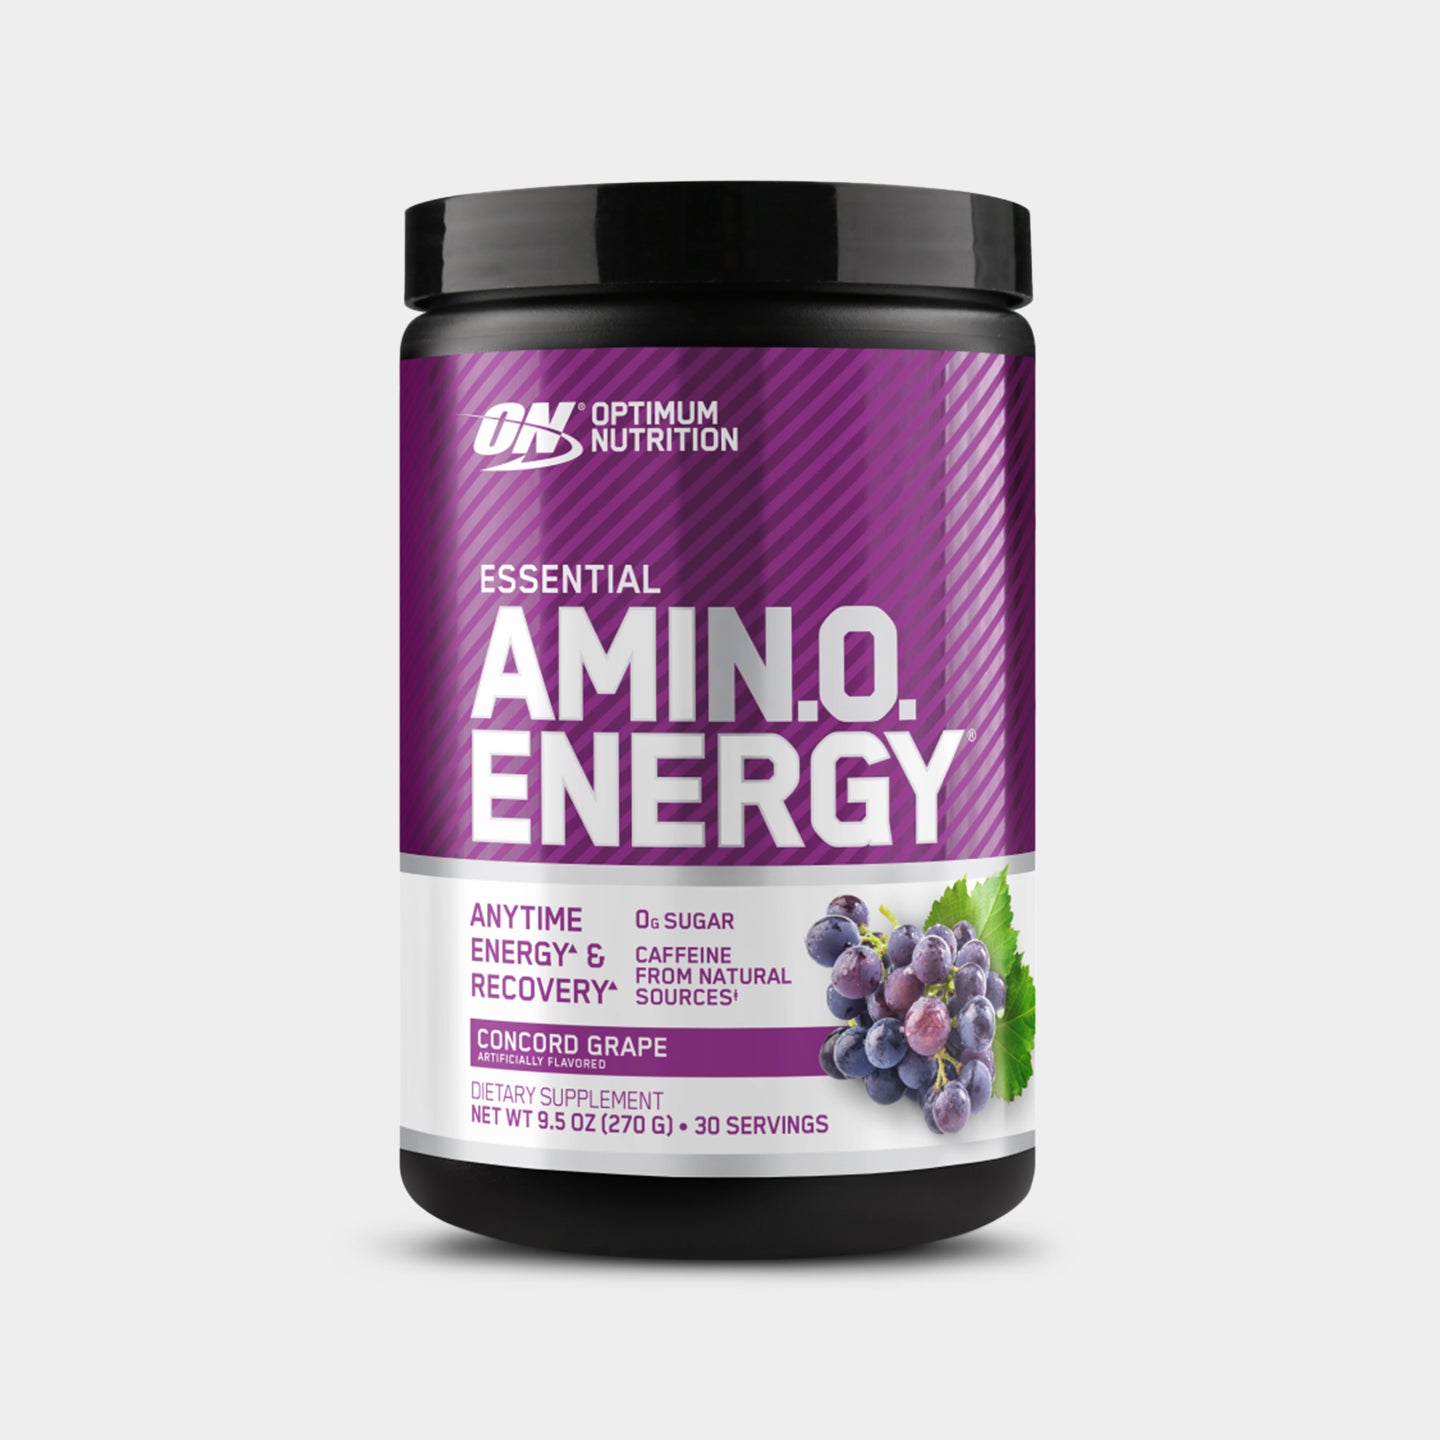 Optimum Nutrition Essential AmiN.O. Energy, Grape, 30 Servings A1